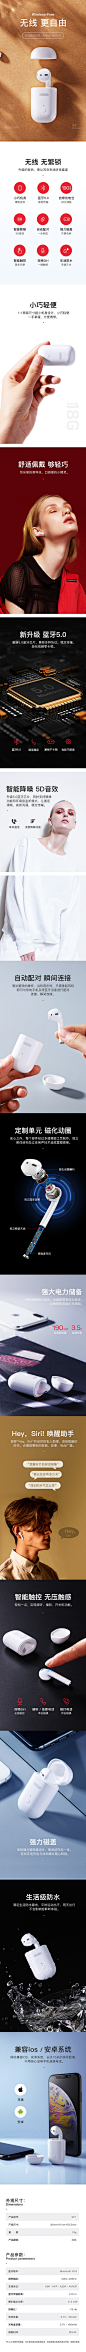 @WANG-夢
原裝正品SP1苹果无线蓝牙耳机